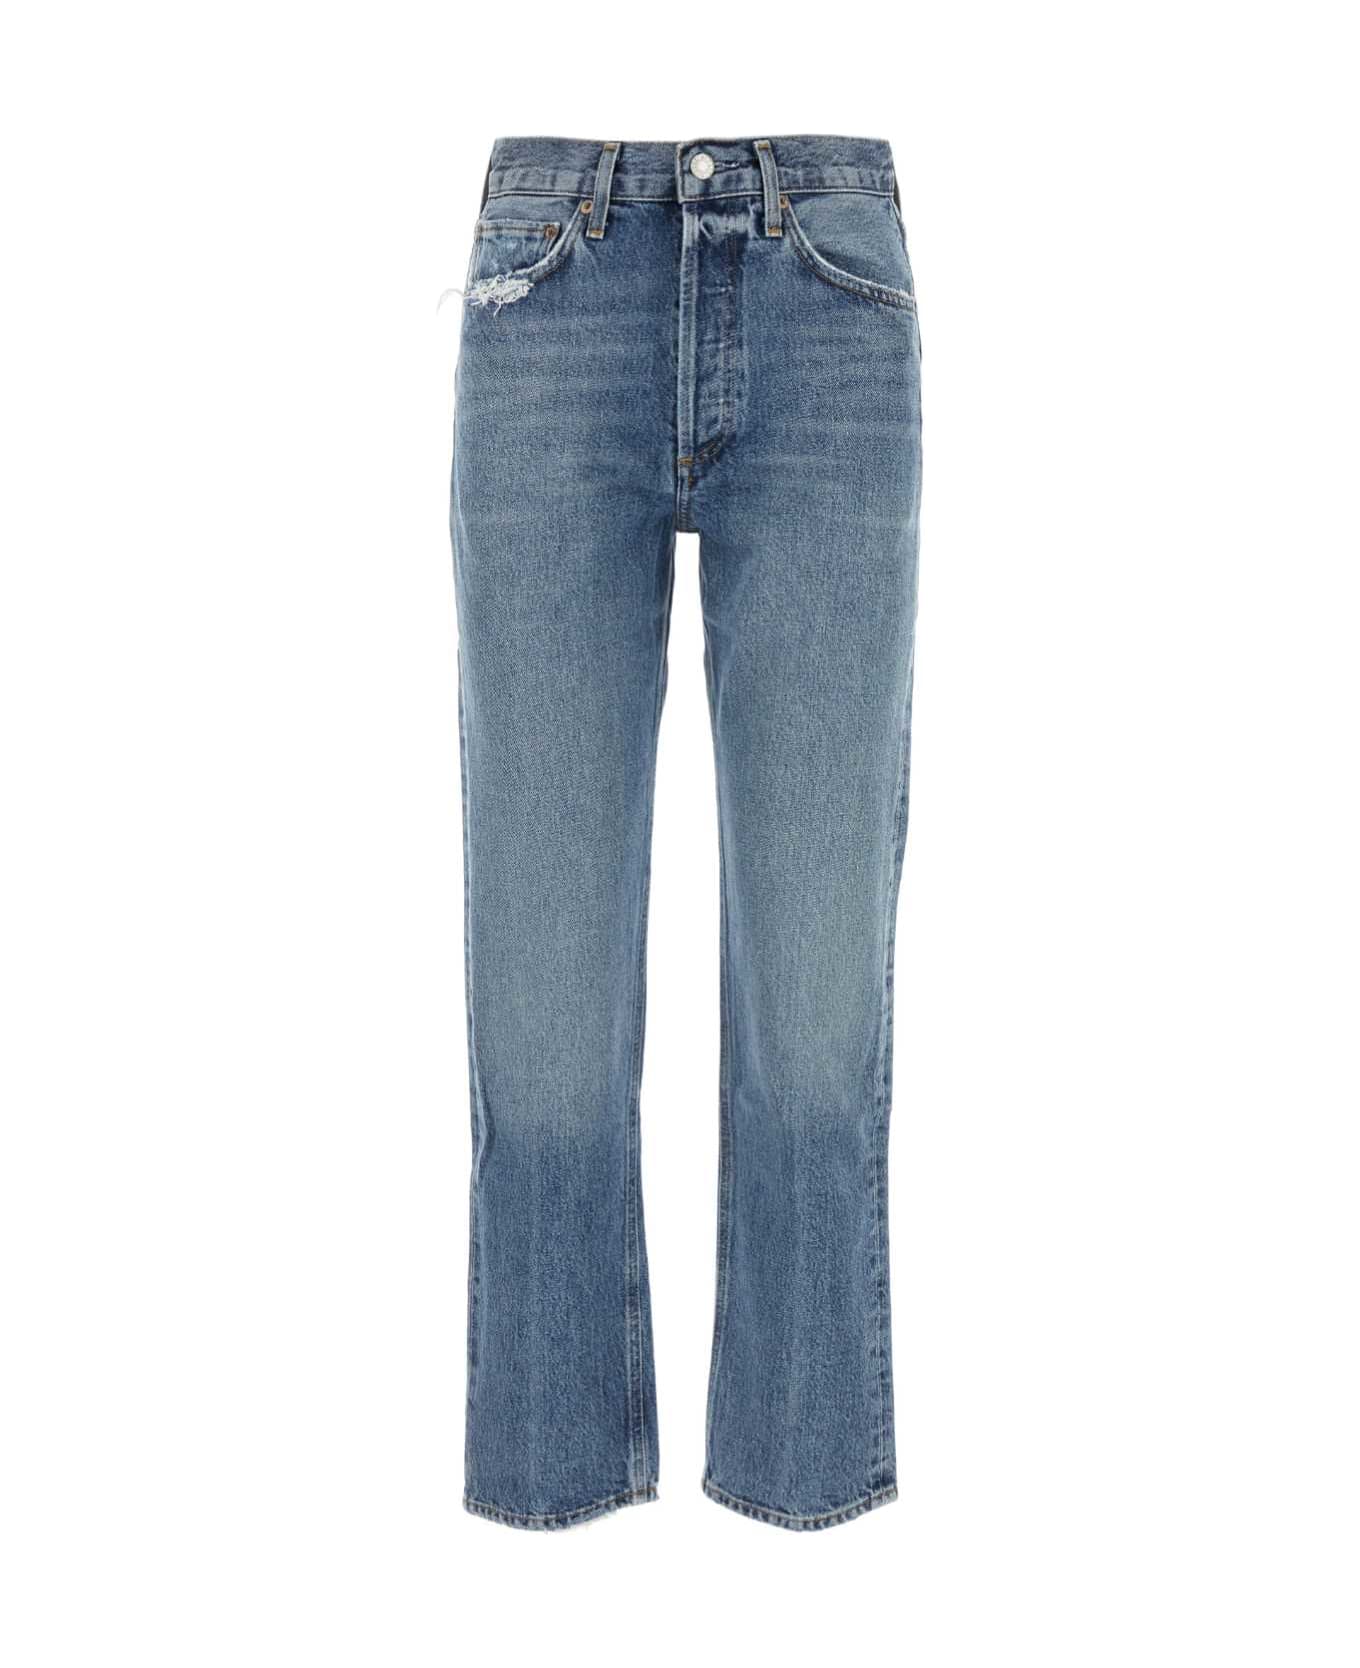 AGOLDE Denim 90s Jeans - HOOK